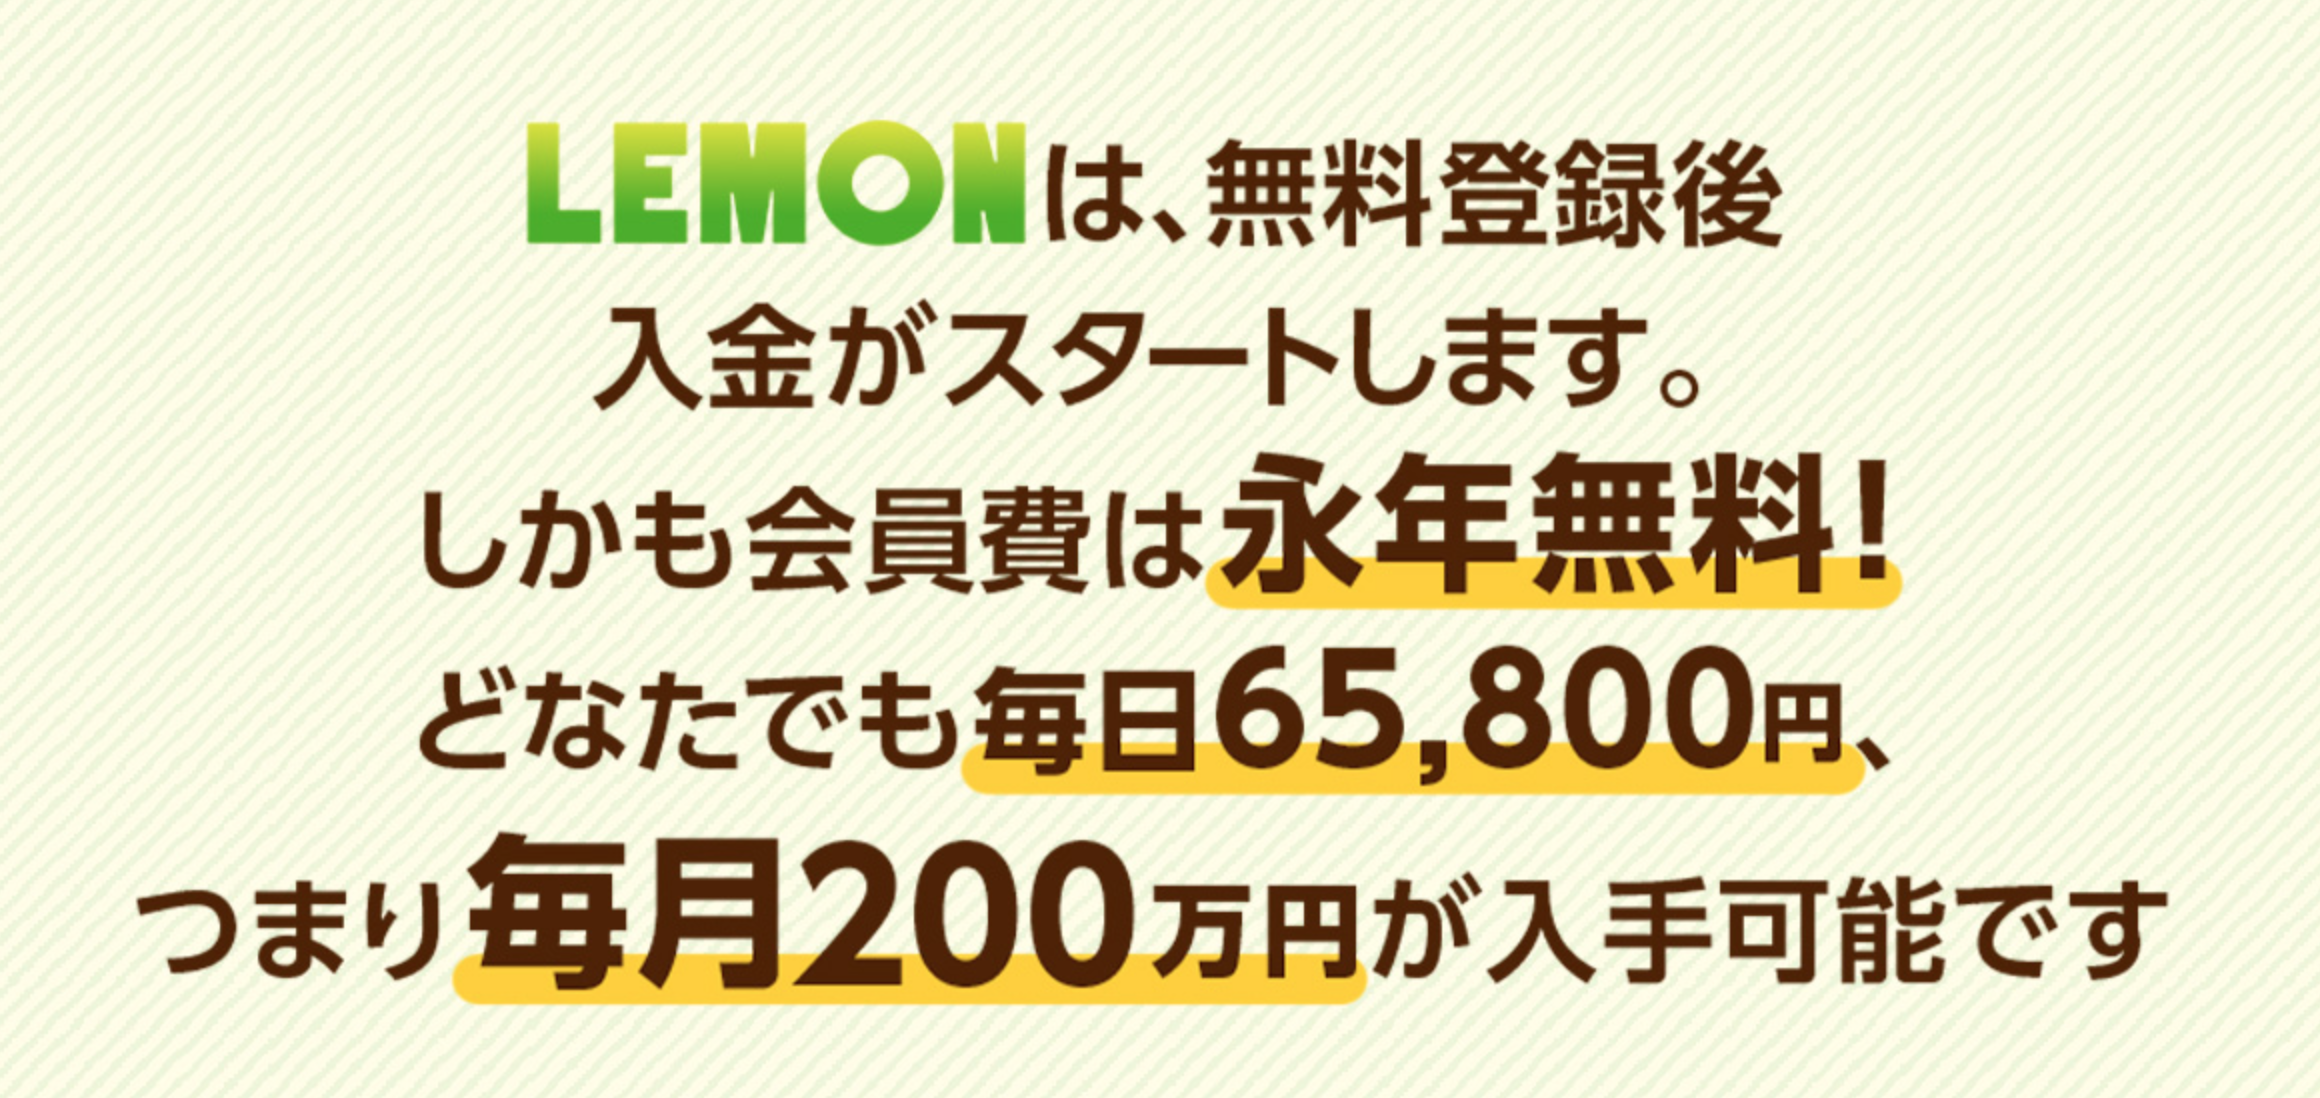 REMON(レモン)4